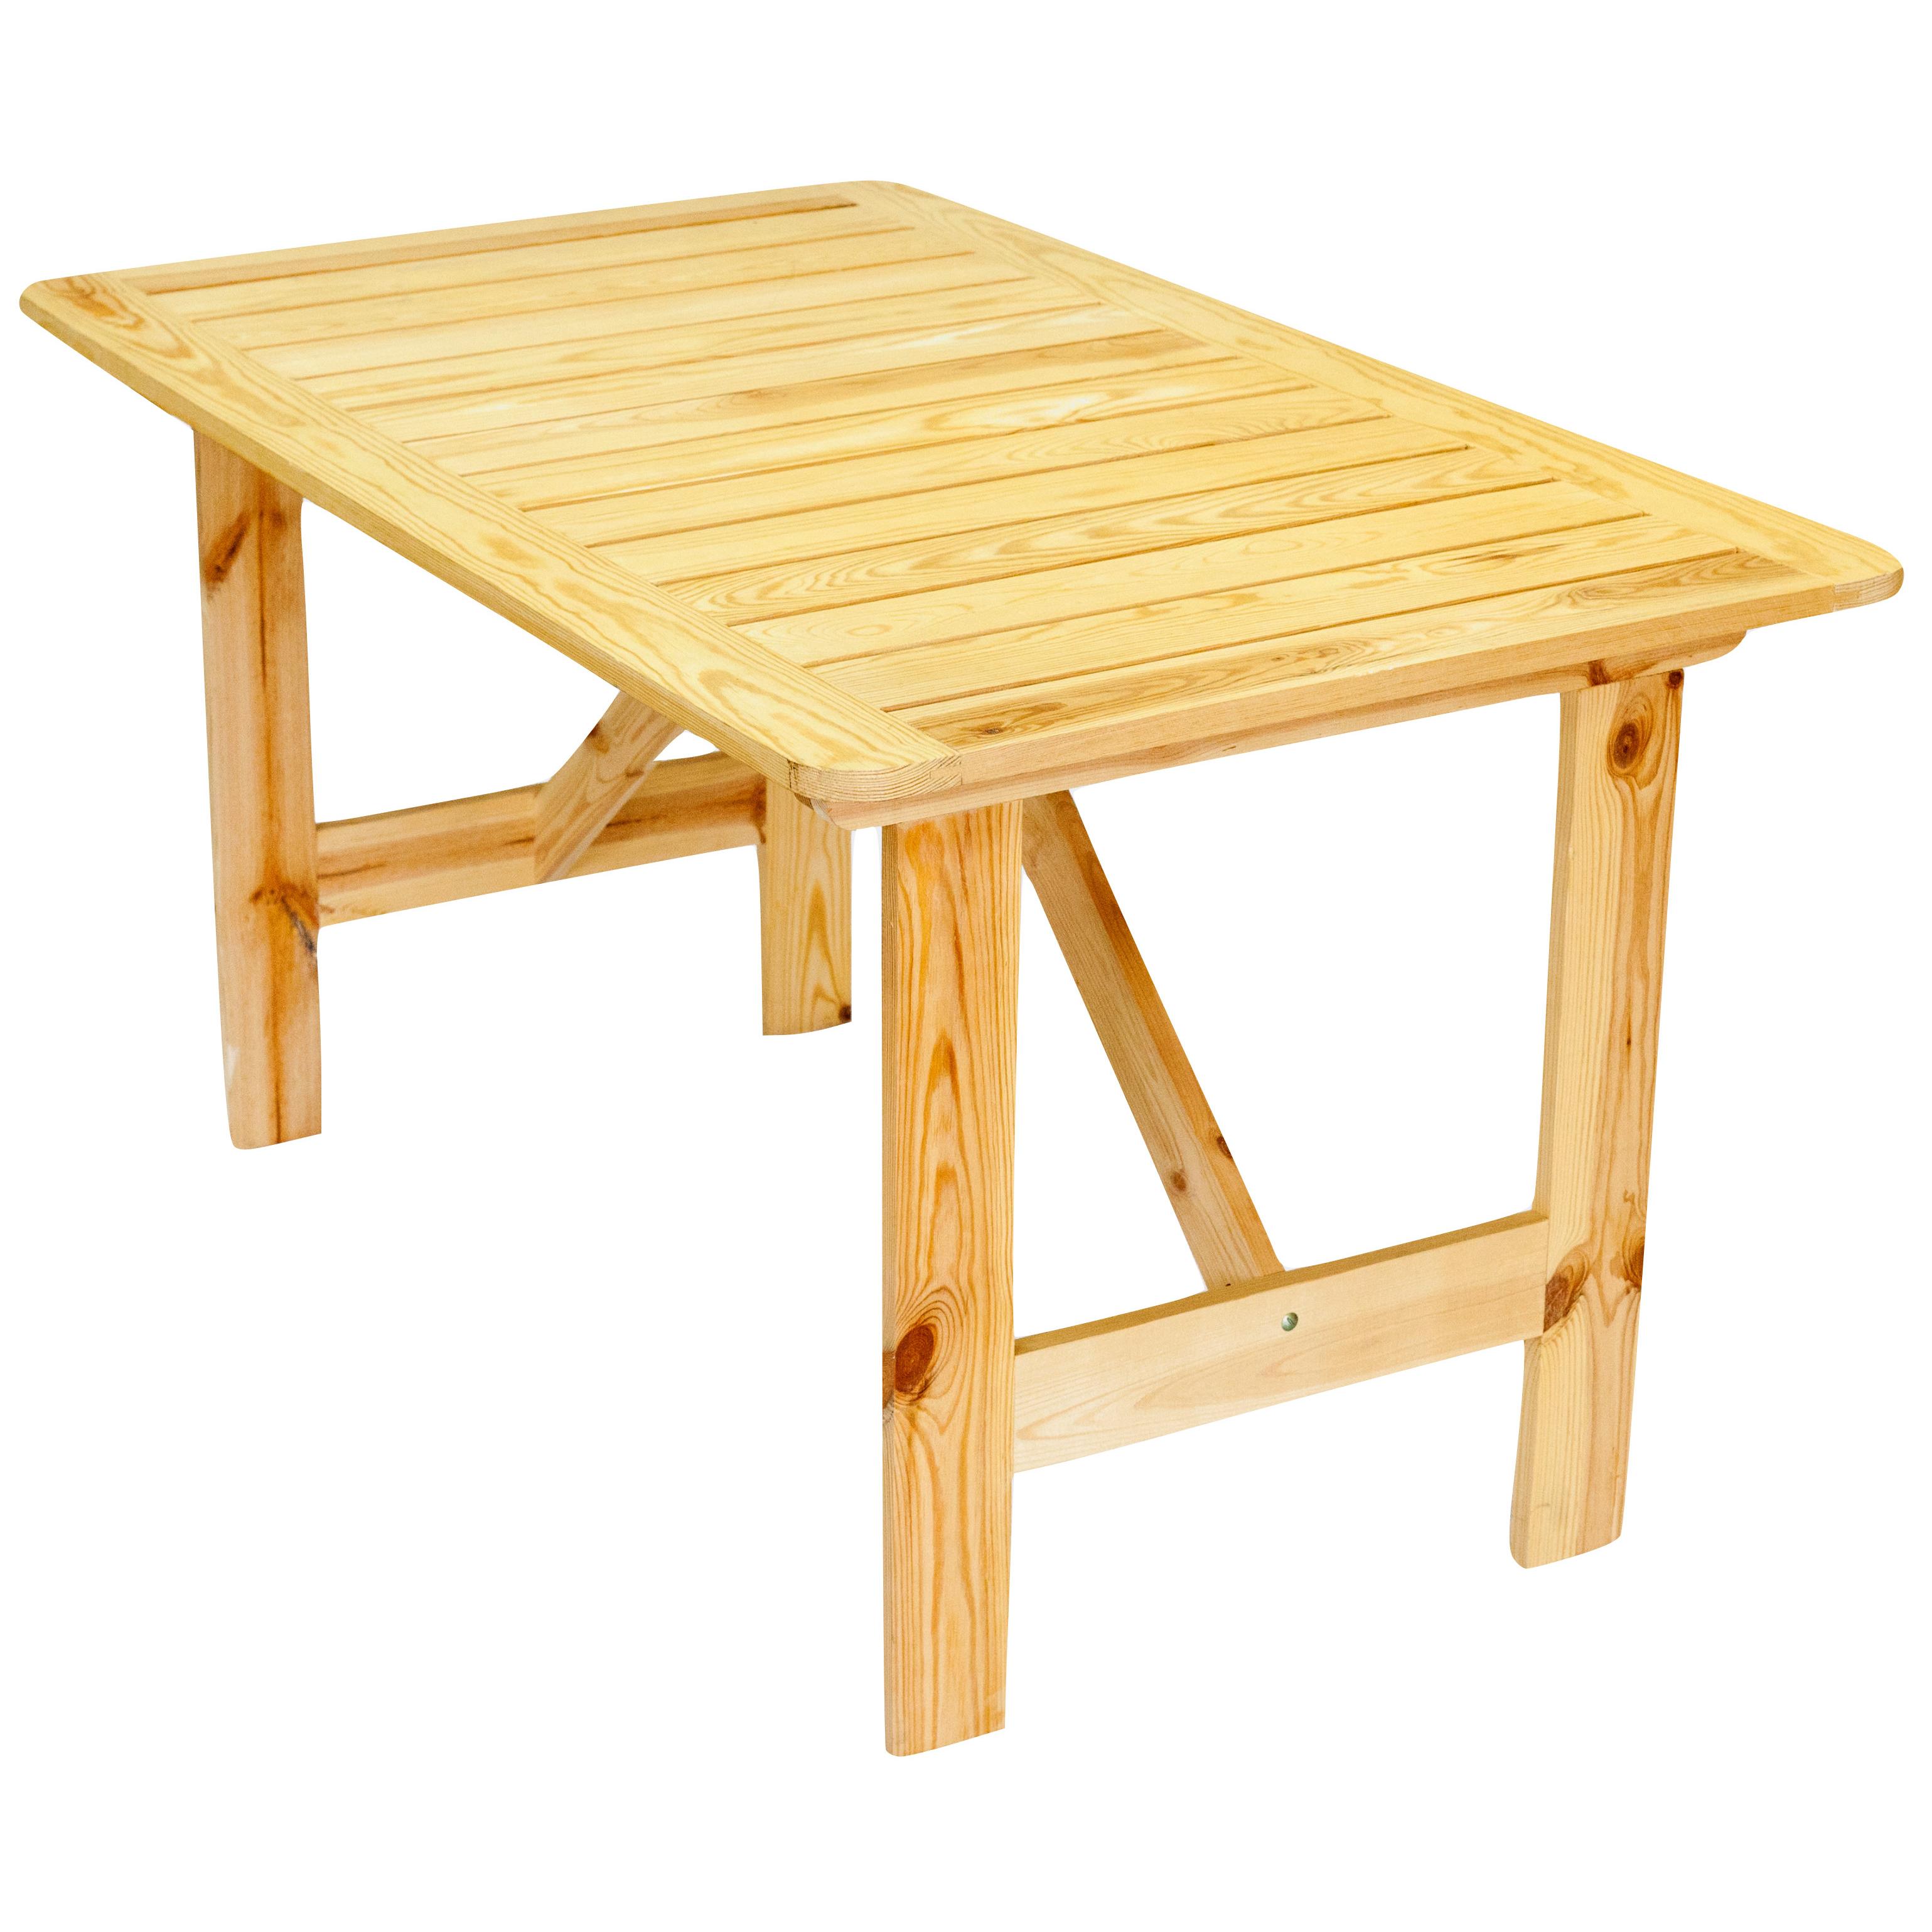 стол складной деревянный для дачи своими руками